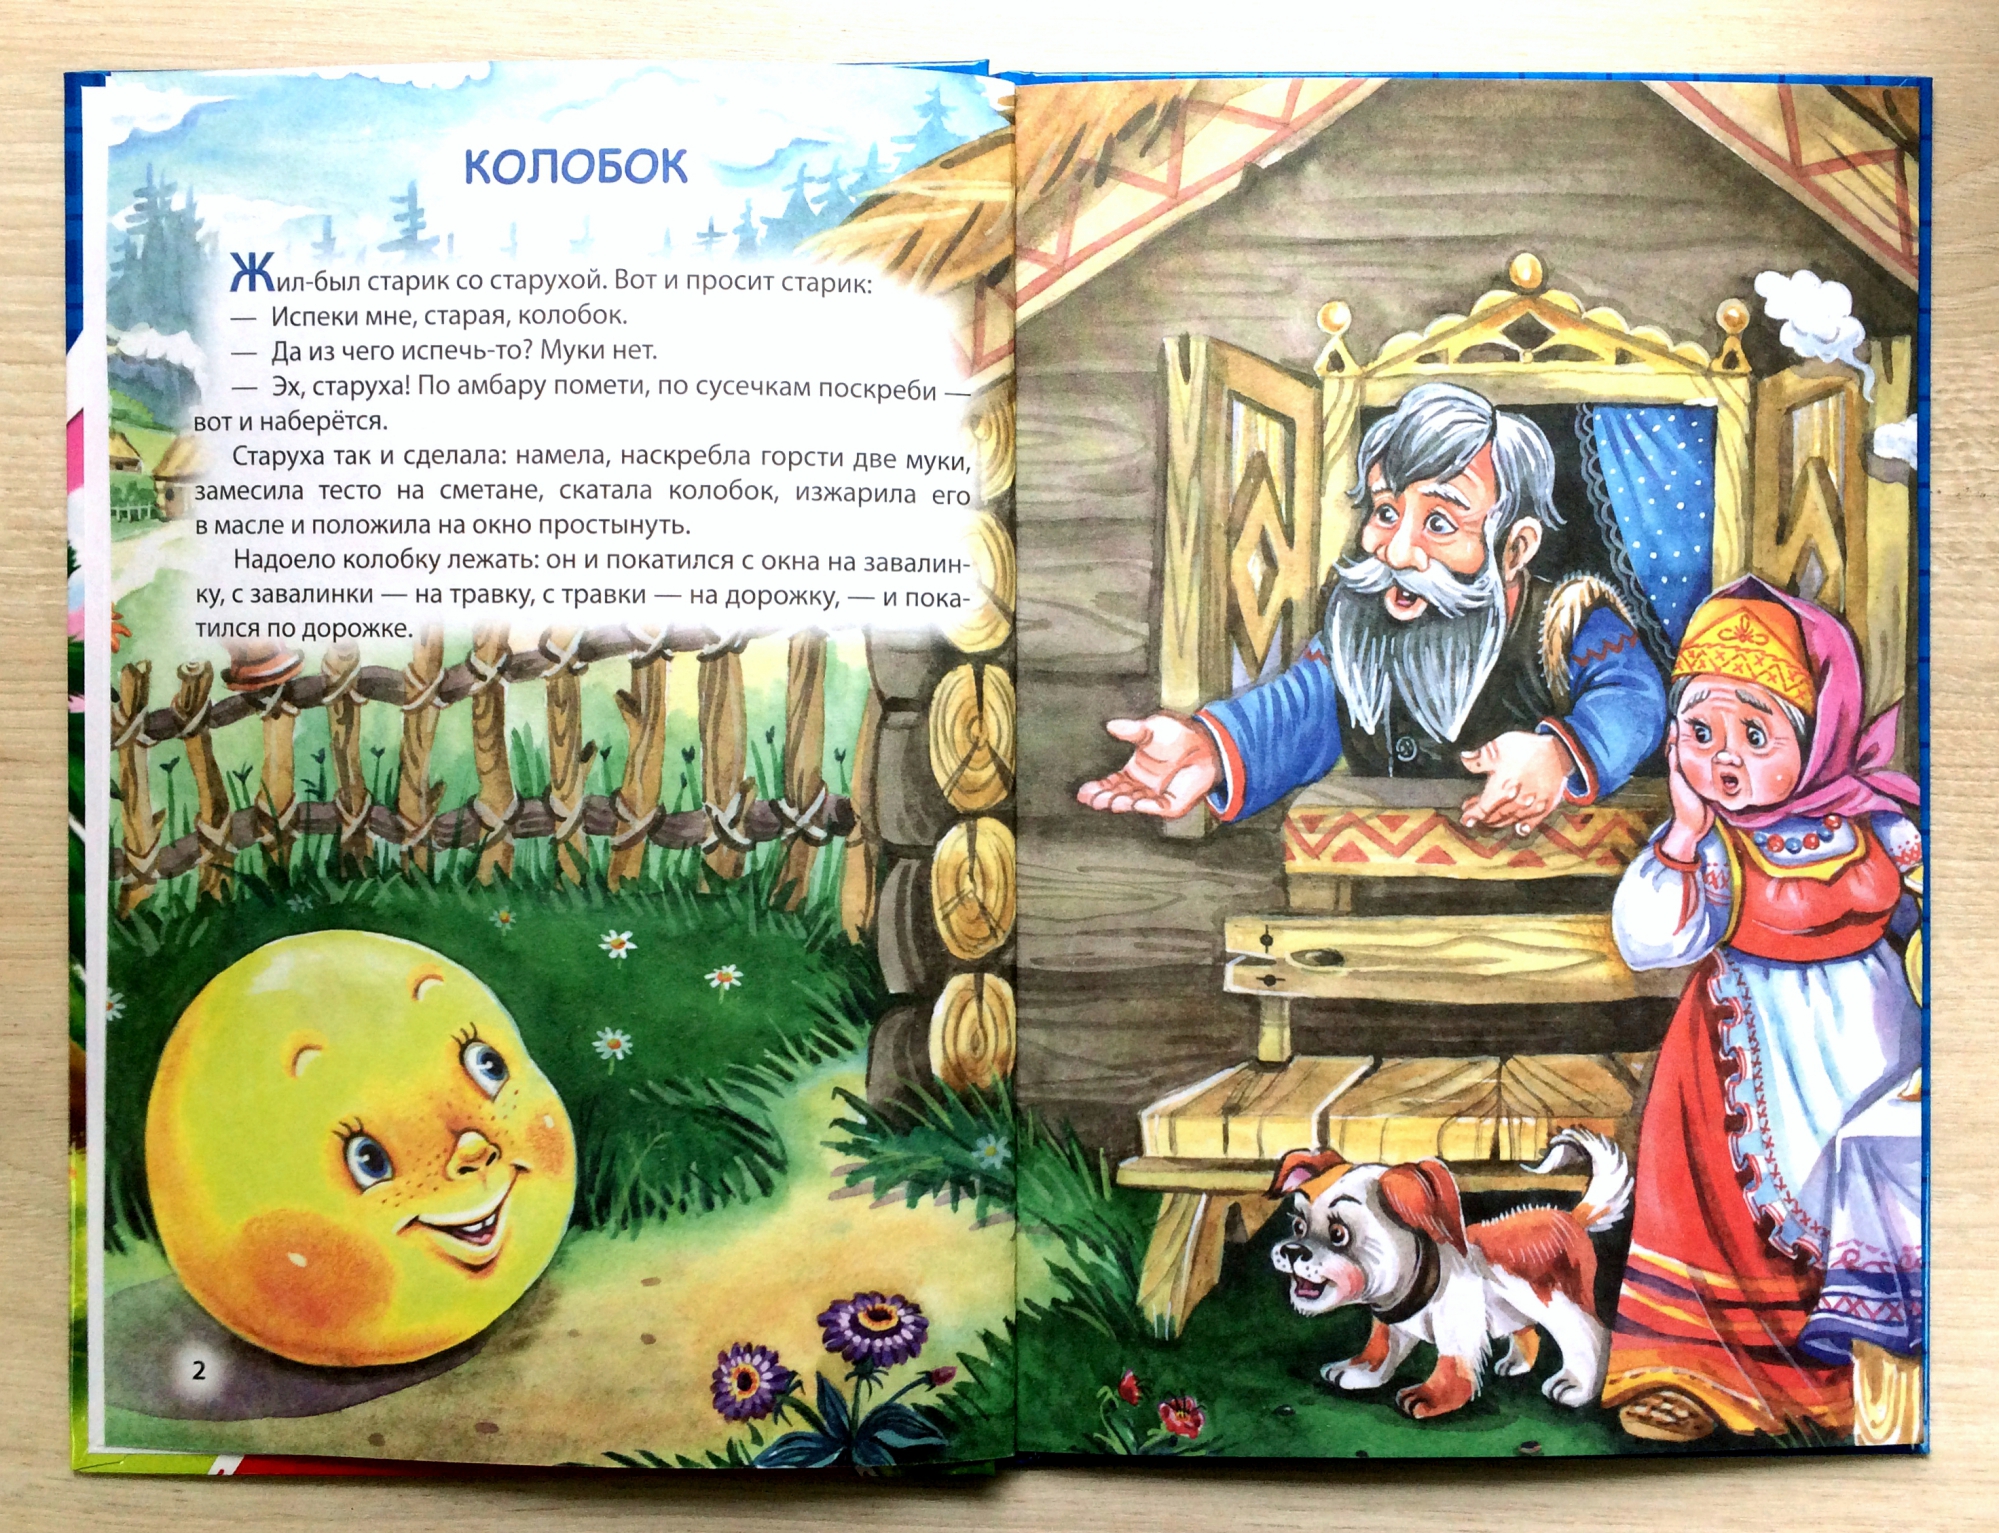 Сказки, рассказы, повести, невероятные истории, приключения. детский портал солнышко solnet.ee